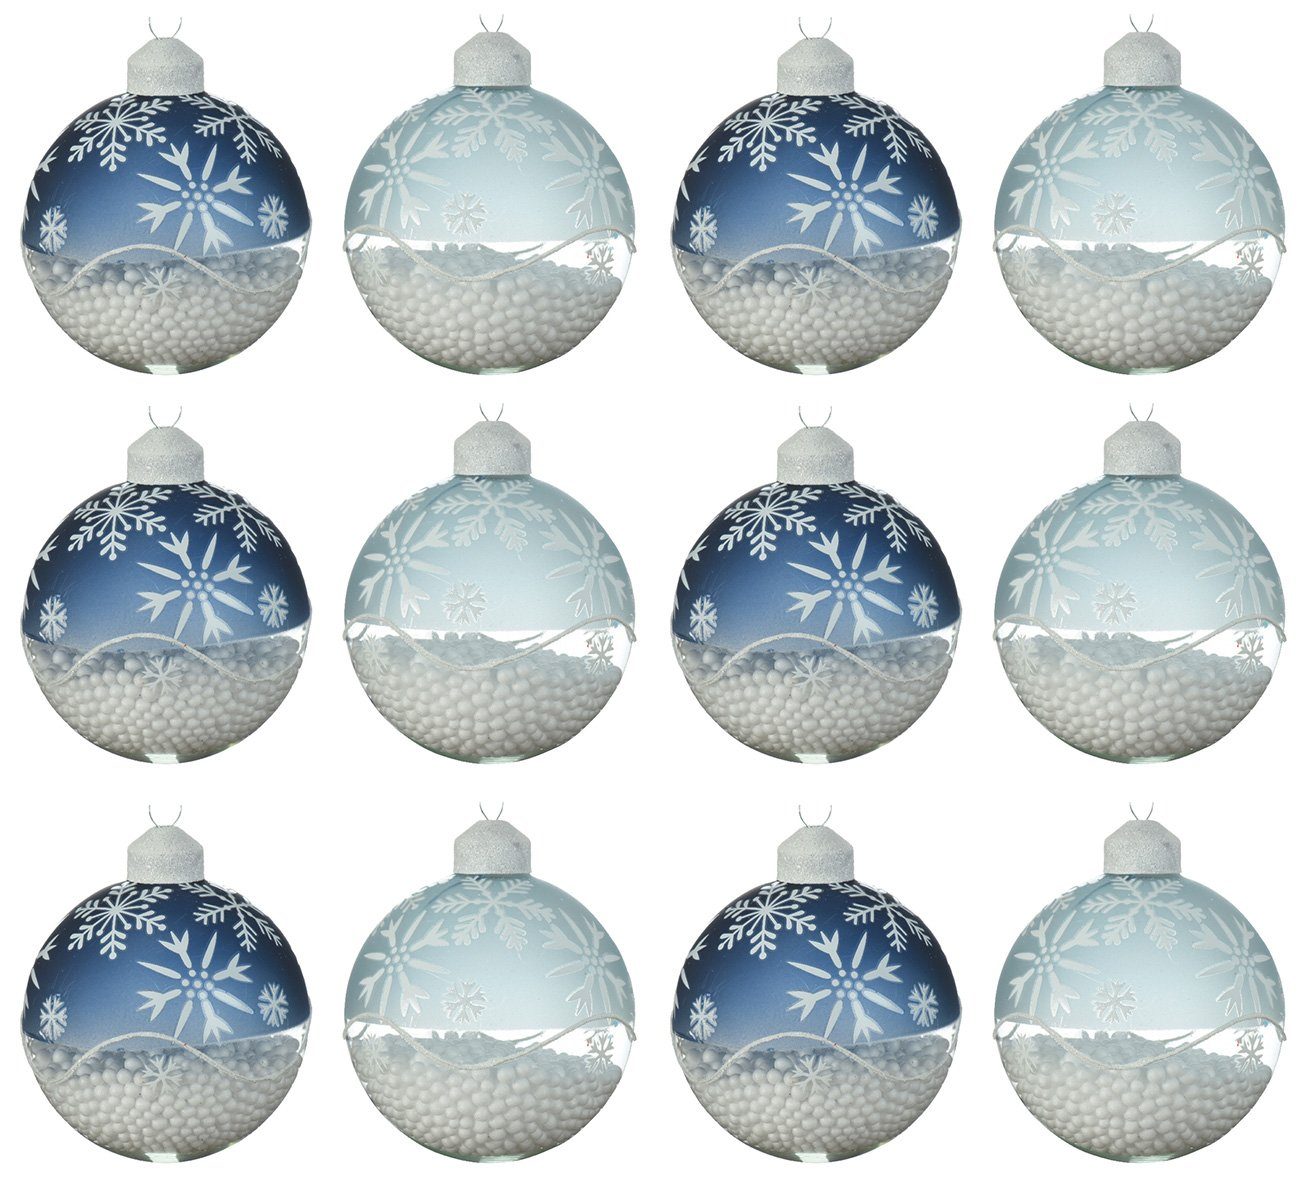 Decoris season decorations Weihnachtsbaumkugel, Weihnachtskugeln Glas 8cm mit Schneeflocken Motiv 12er Set blau mix